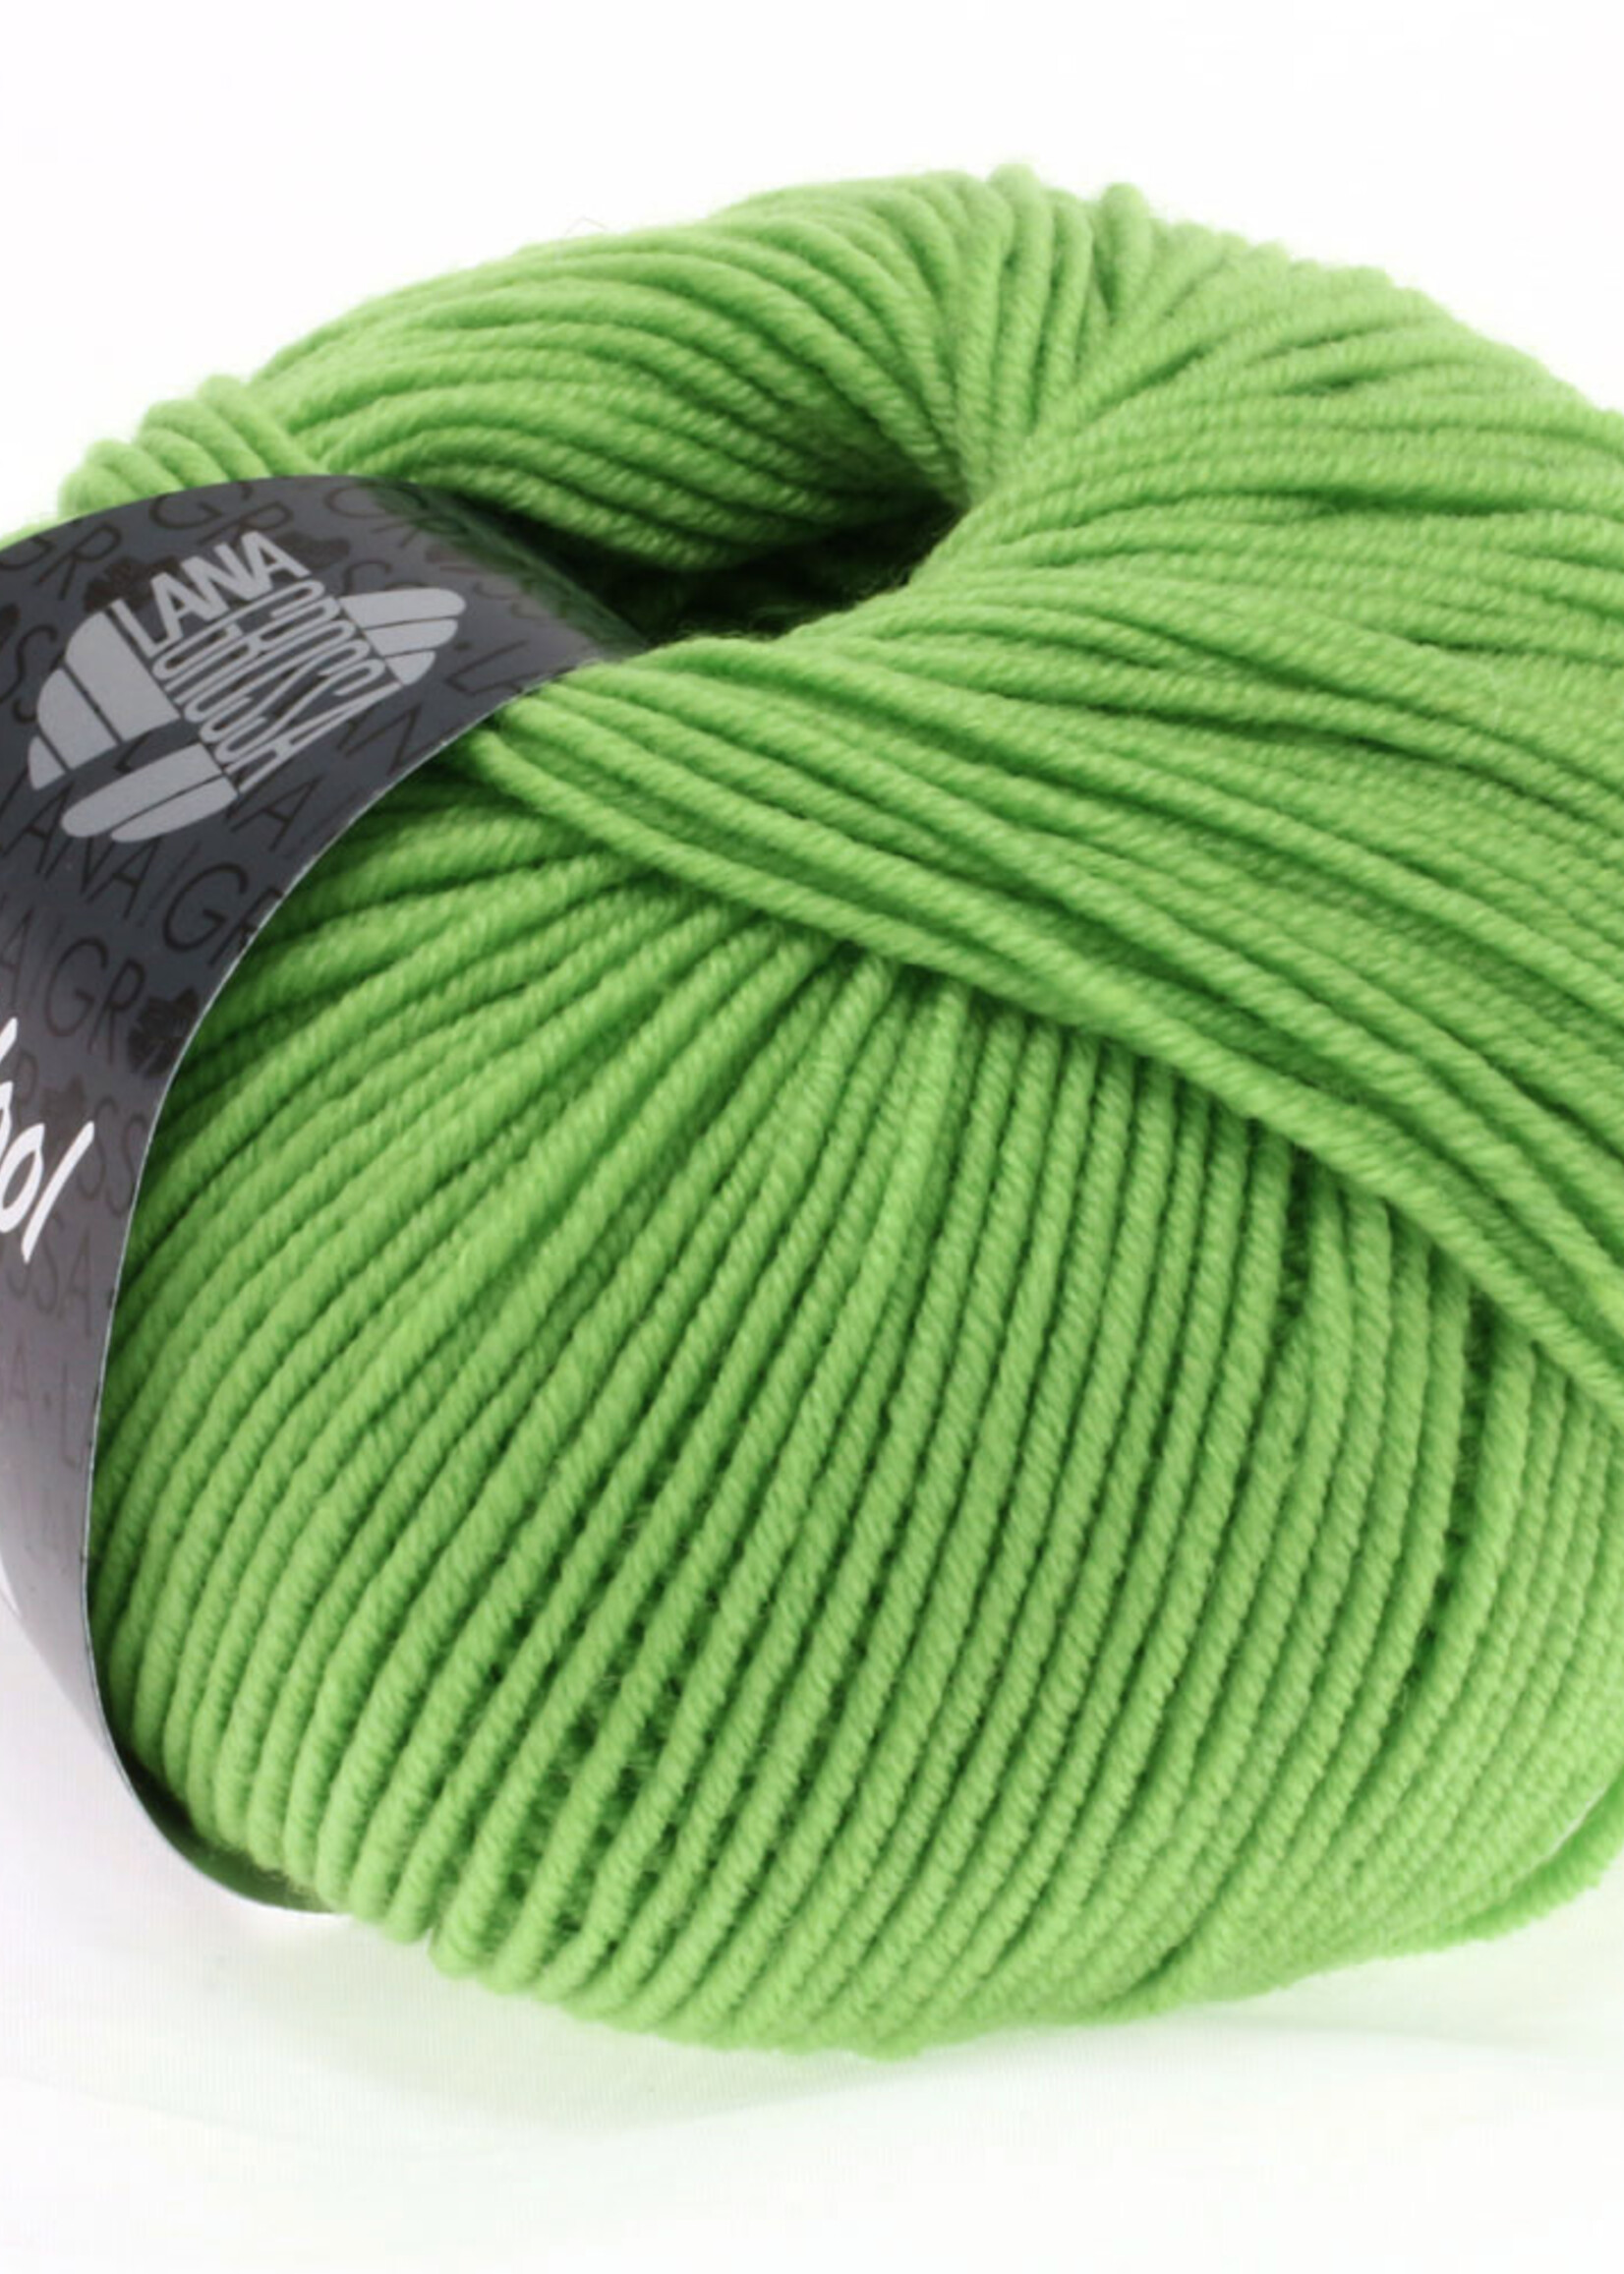 Lana Grossa Cool Wool - Lana Grossa - 509 lichtgroen